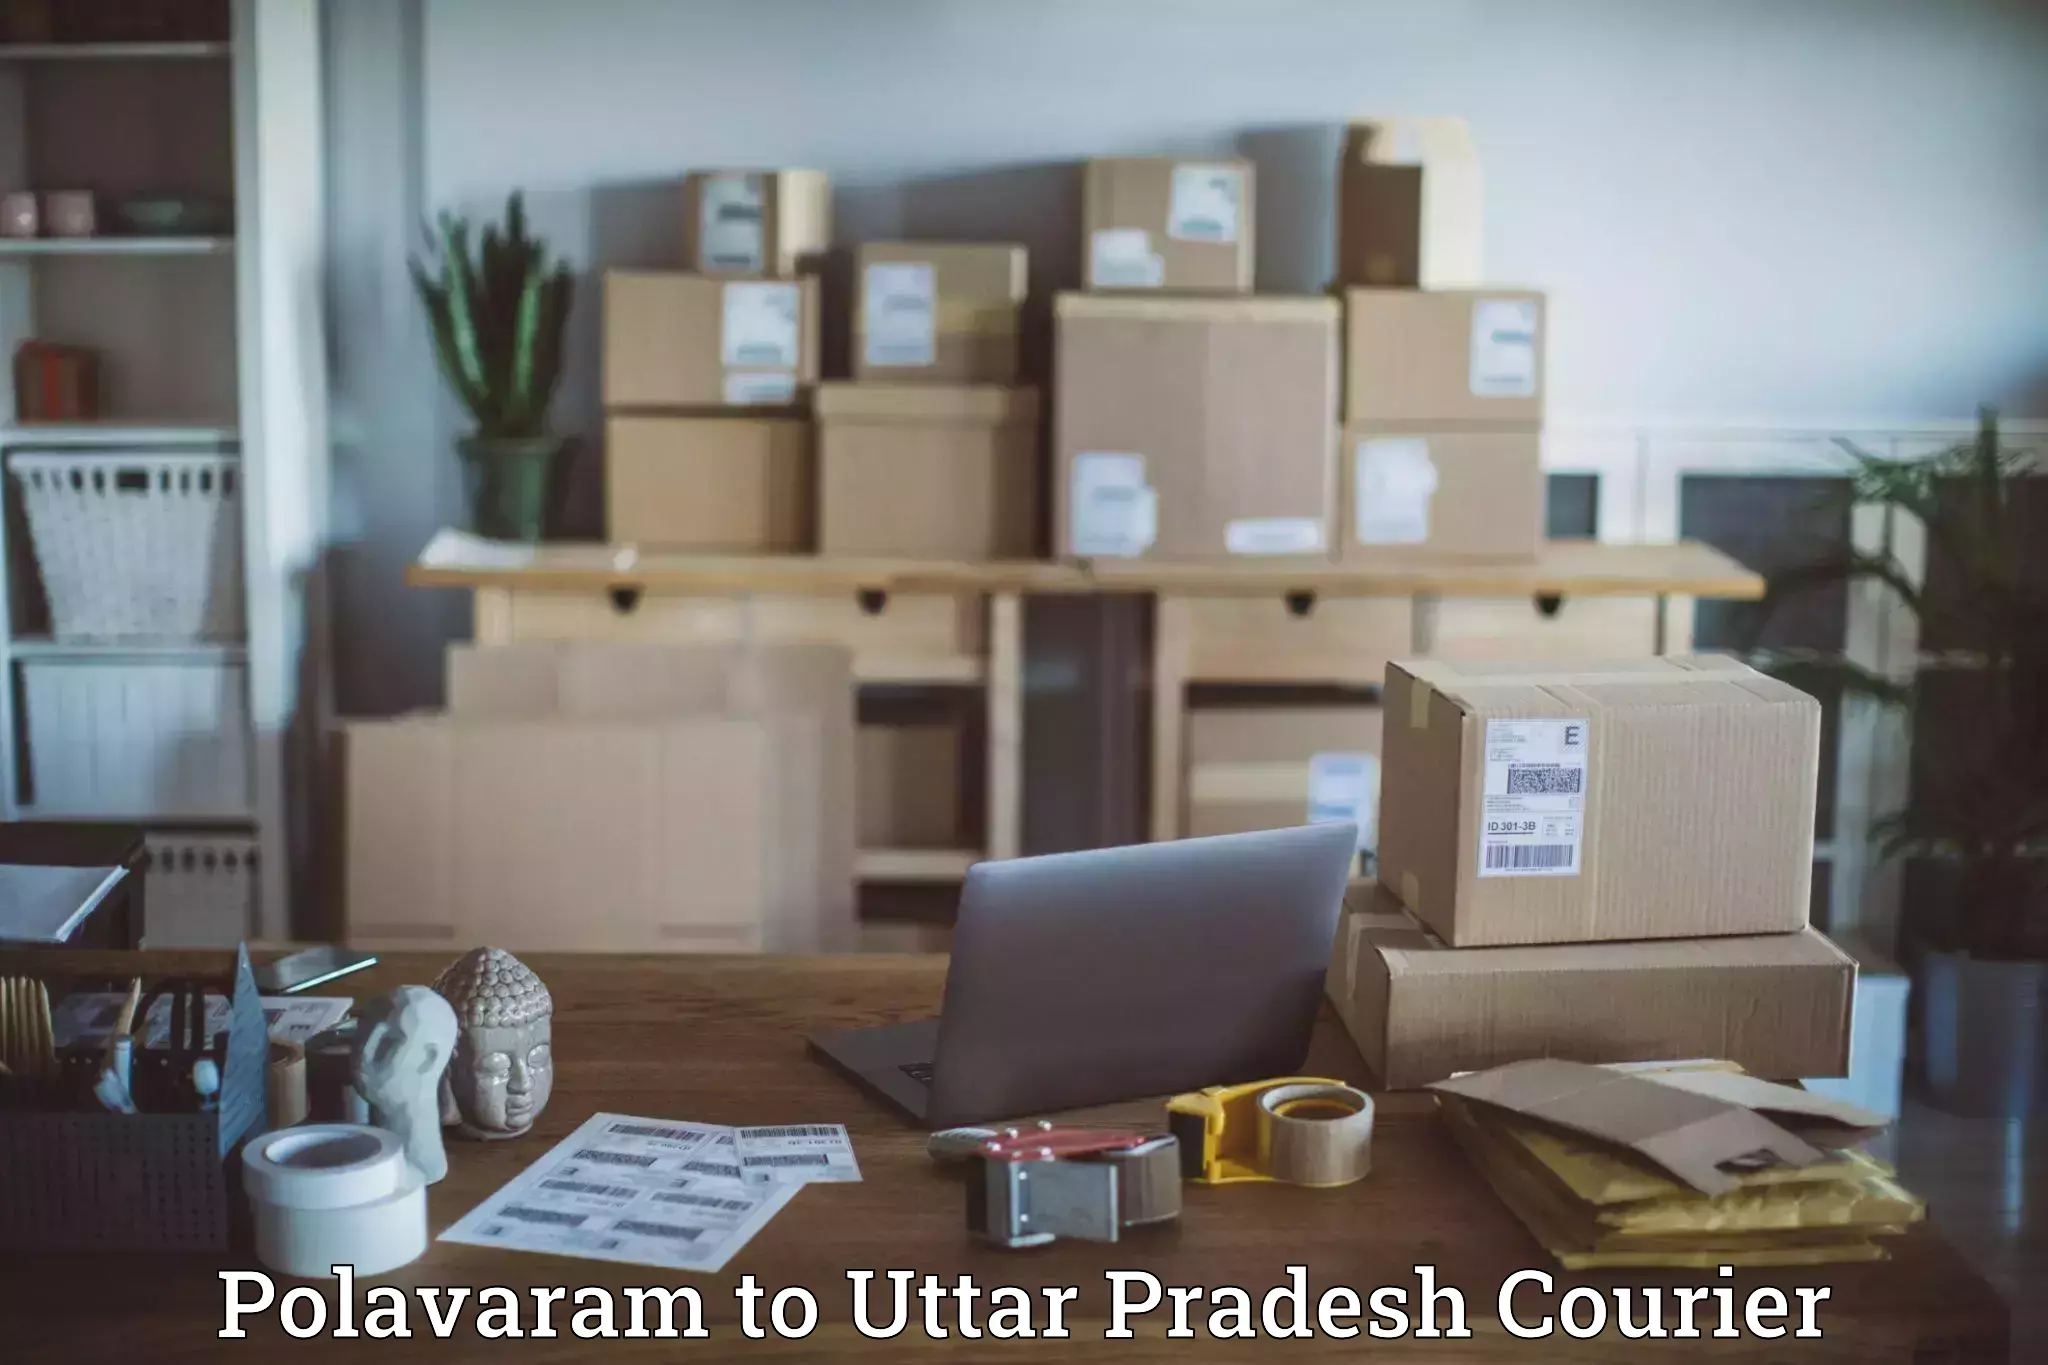 Automated shipping processes Polavaram to Aligarh Muslim University